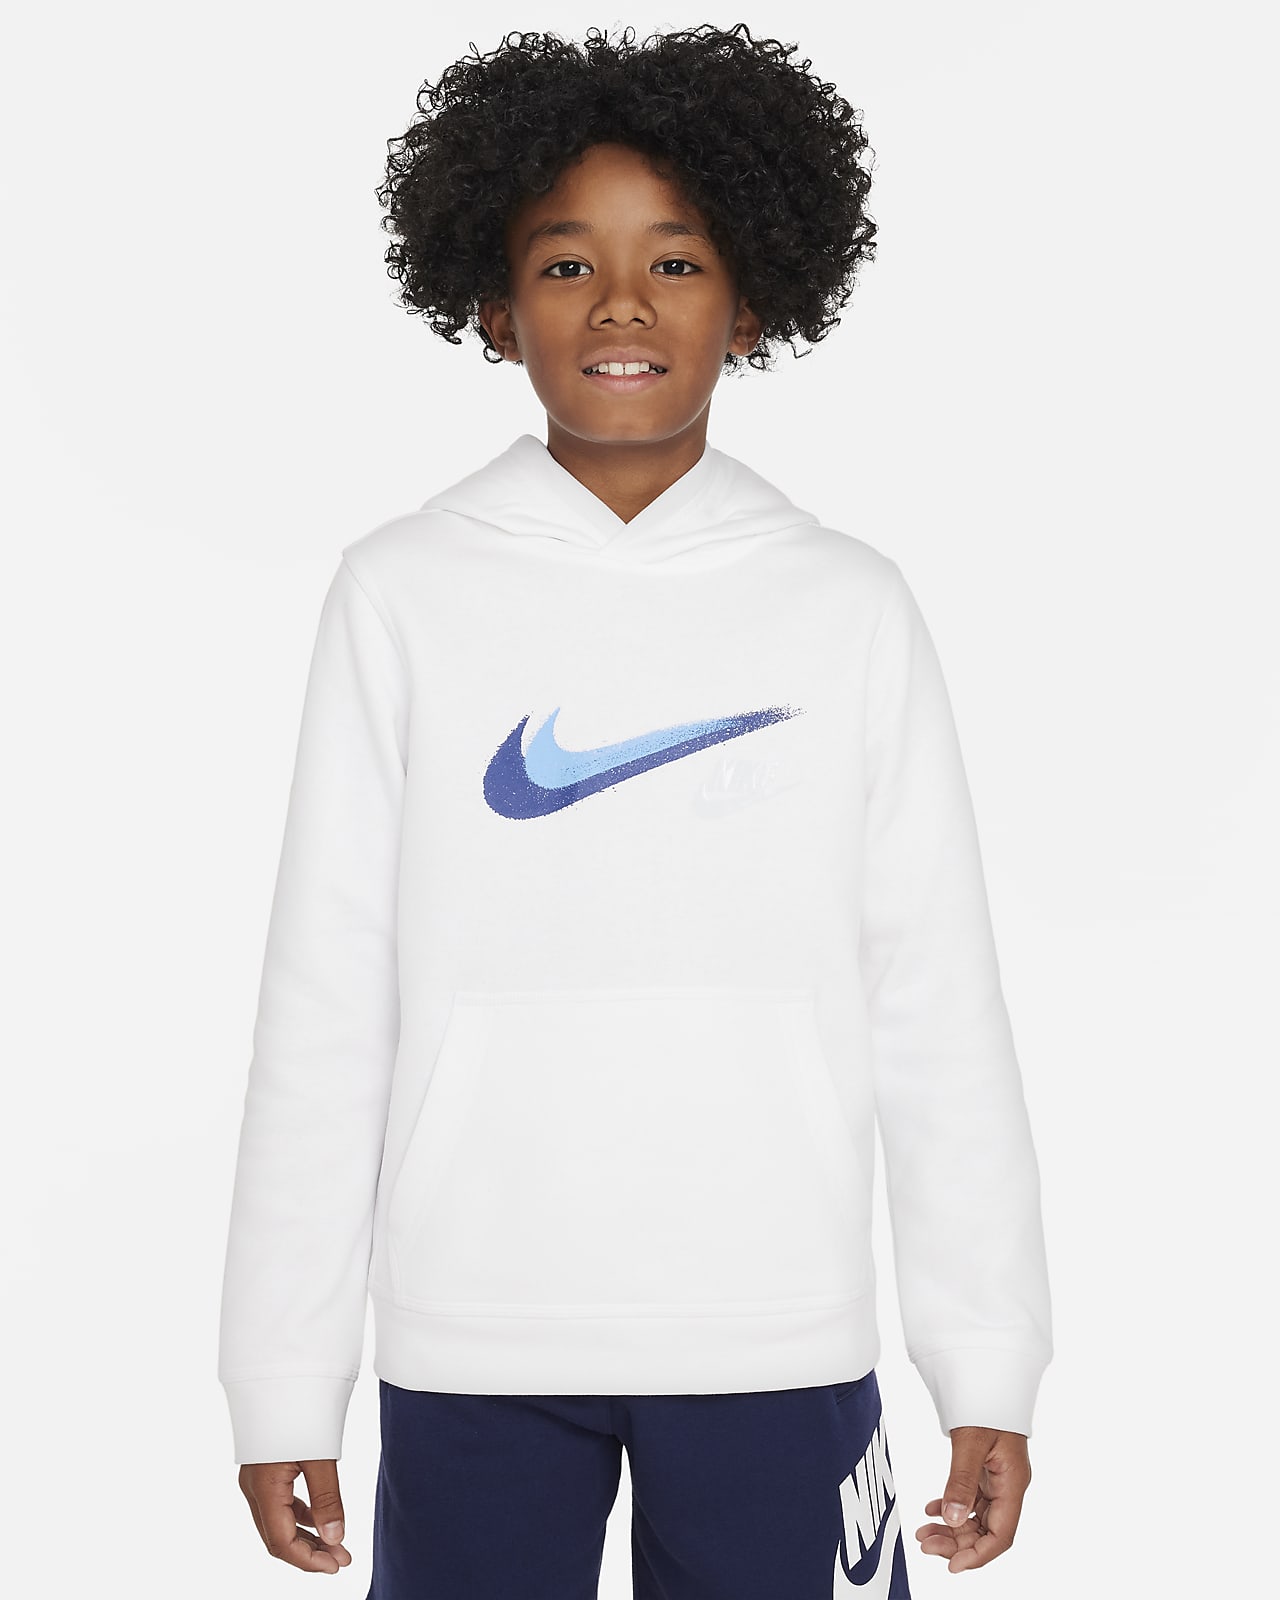 Flísová mikina Nike Sportswear s kapucí a grafickým motivem pro větší děti (chlapce)